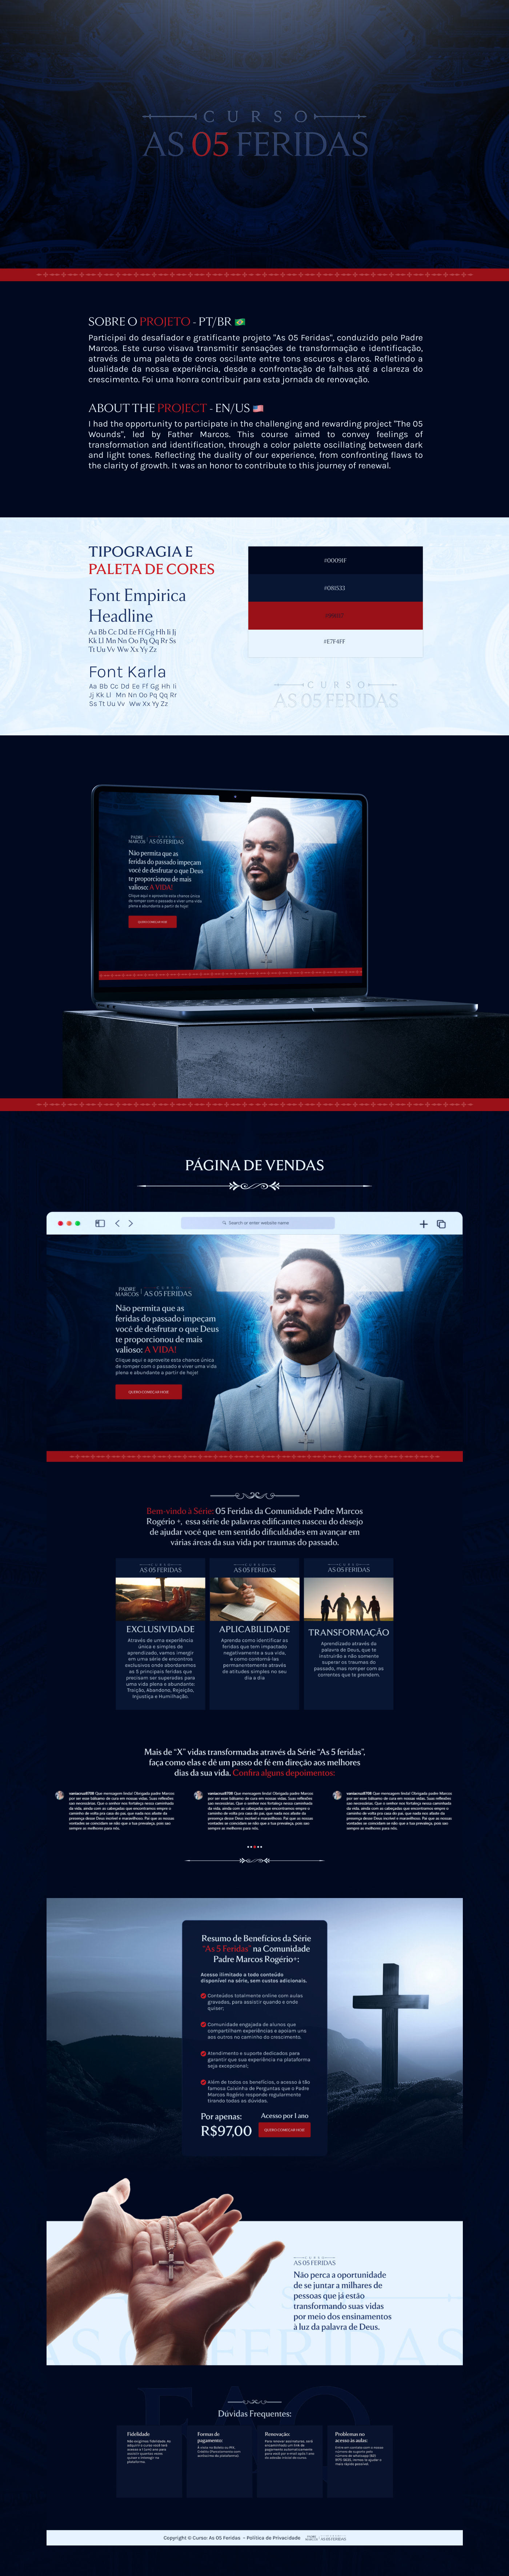 criativos lançamento marketing digital pagina de vendas Página de captura infoproduto key visual design